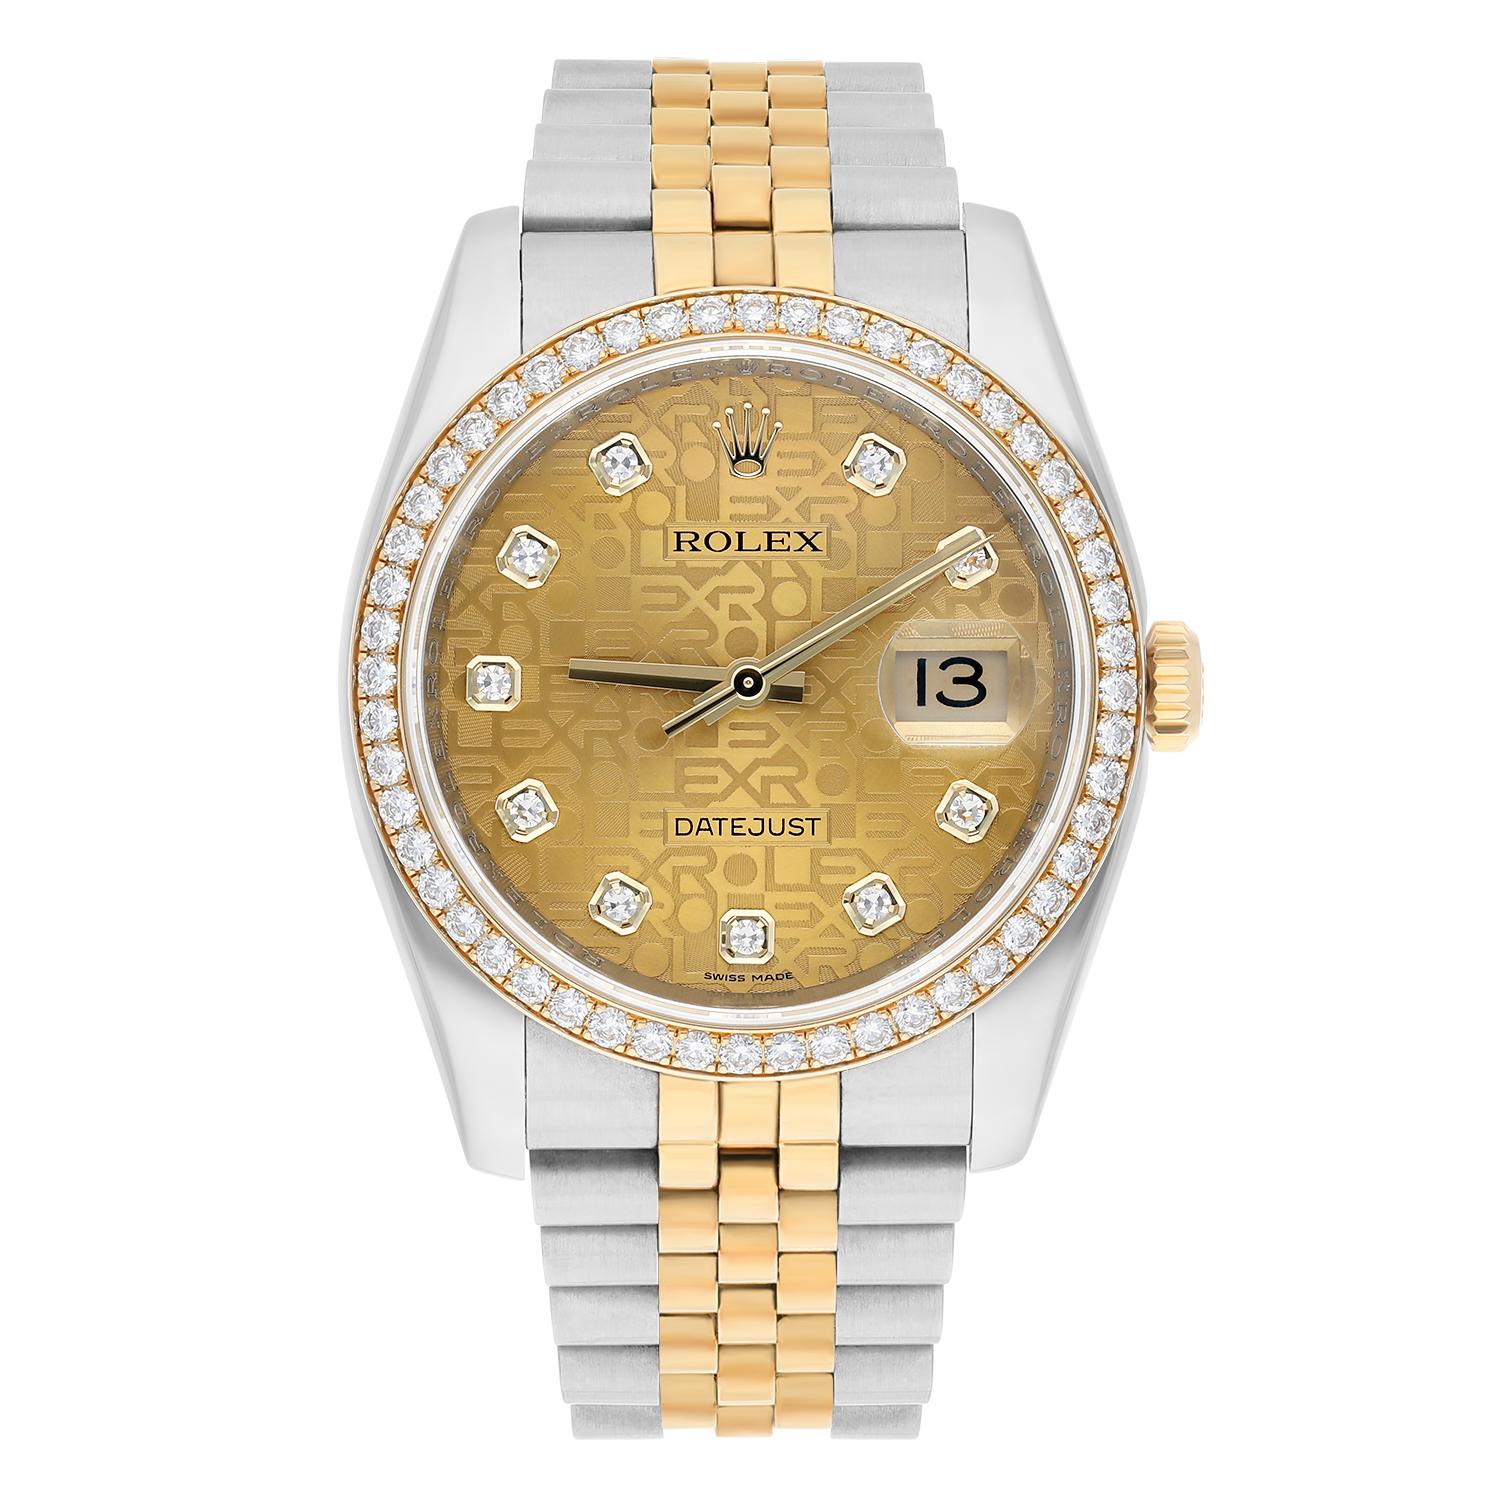 Erhöhen Sie Ihren Stil mit dieser exquisiten Rolex Datejust-Armbanduhr. Dieser klassische Zeitmesser mit Edelstahl- und Gelbgoldarmband verfügt über ein champagnerfarbenes Zifferblatt mit Diamantindexen. Diese luxuriöse Uhr verfügt über ein